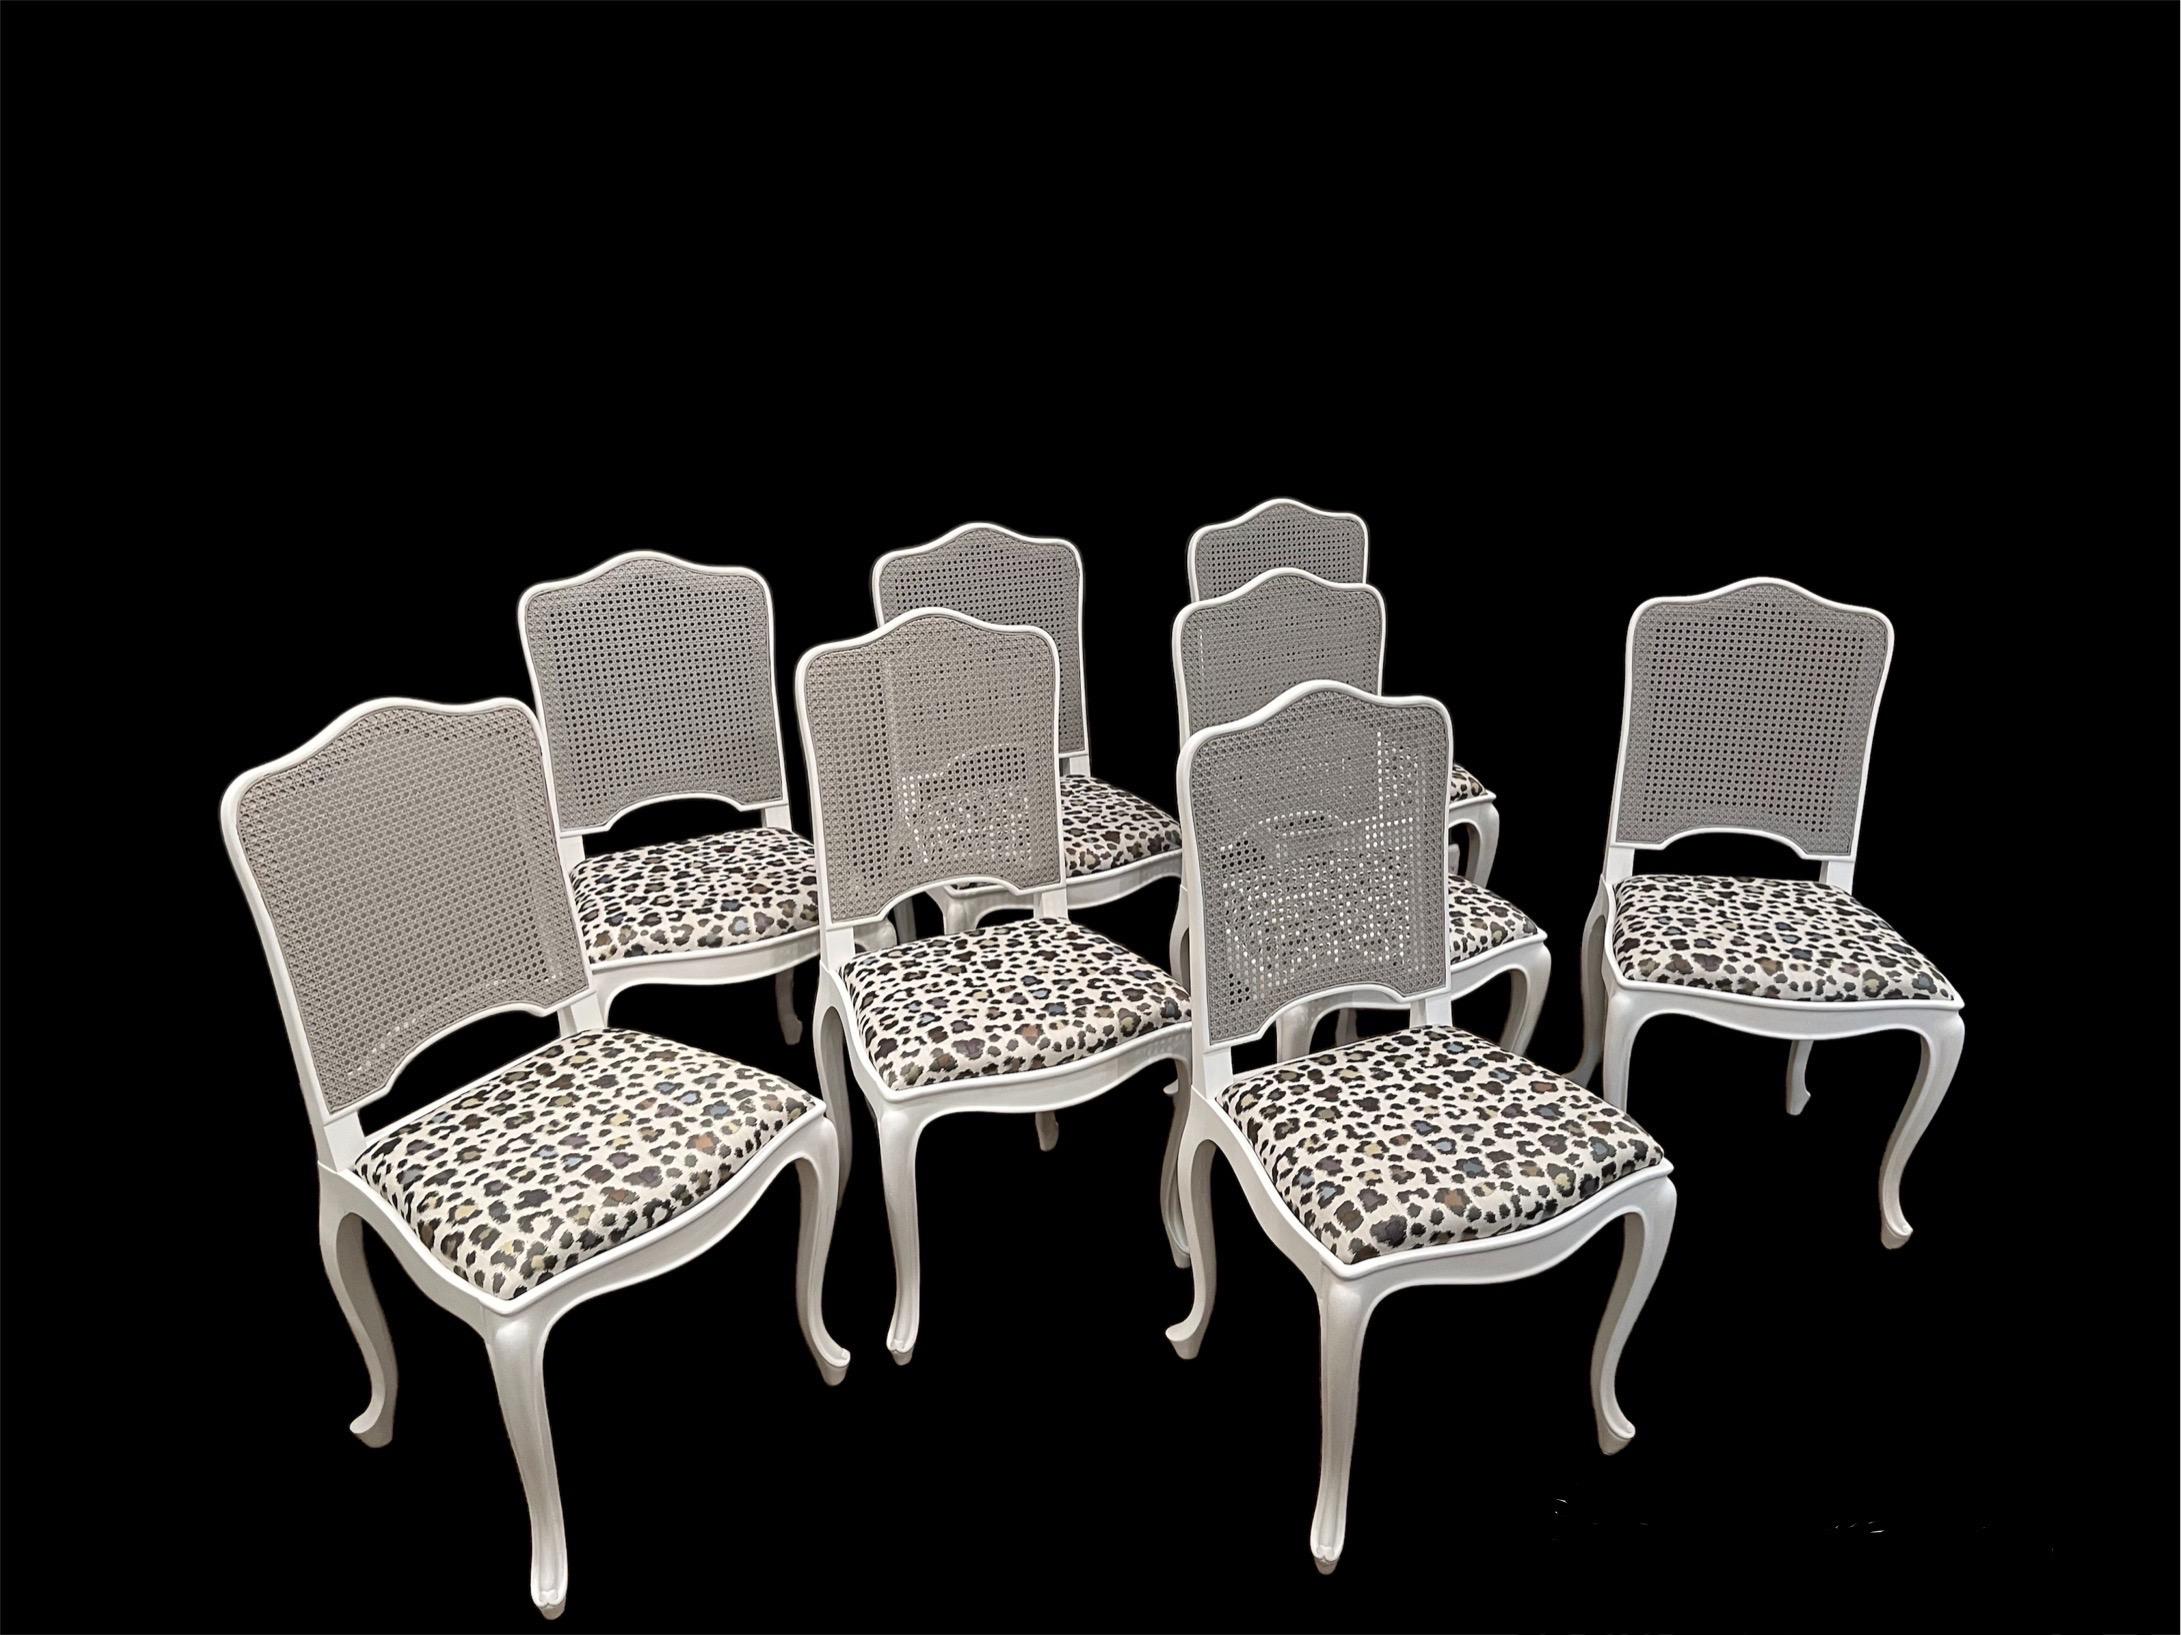 Acht Louis XV Stil Schilfrohr zurück Esszimmer Stühle w Schlupf Sitze. Die Rahmen der Stühle sind fein in mattem Weiß lackiert, die Rückenlehnen in einem zarten Hellgrau. Die Stuhlrahmen sind fest und die Sitze neu gepolstert.